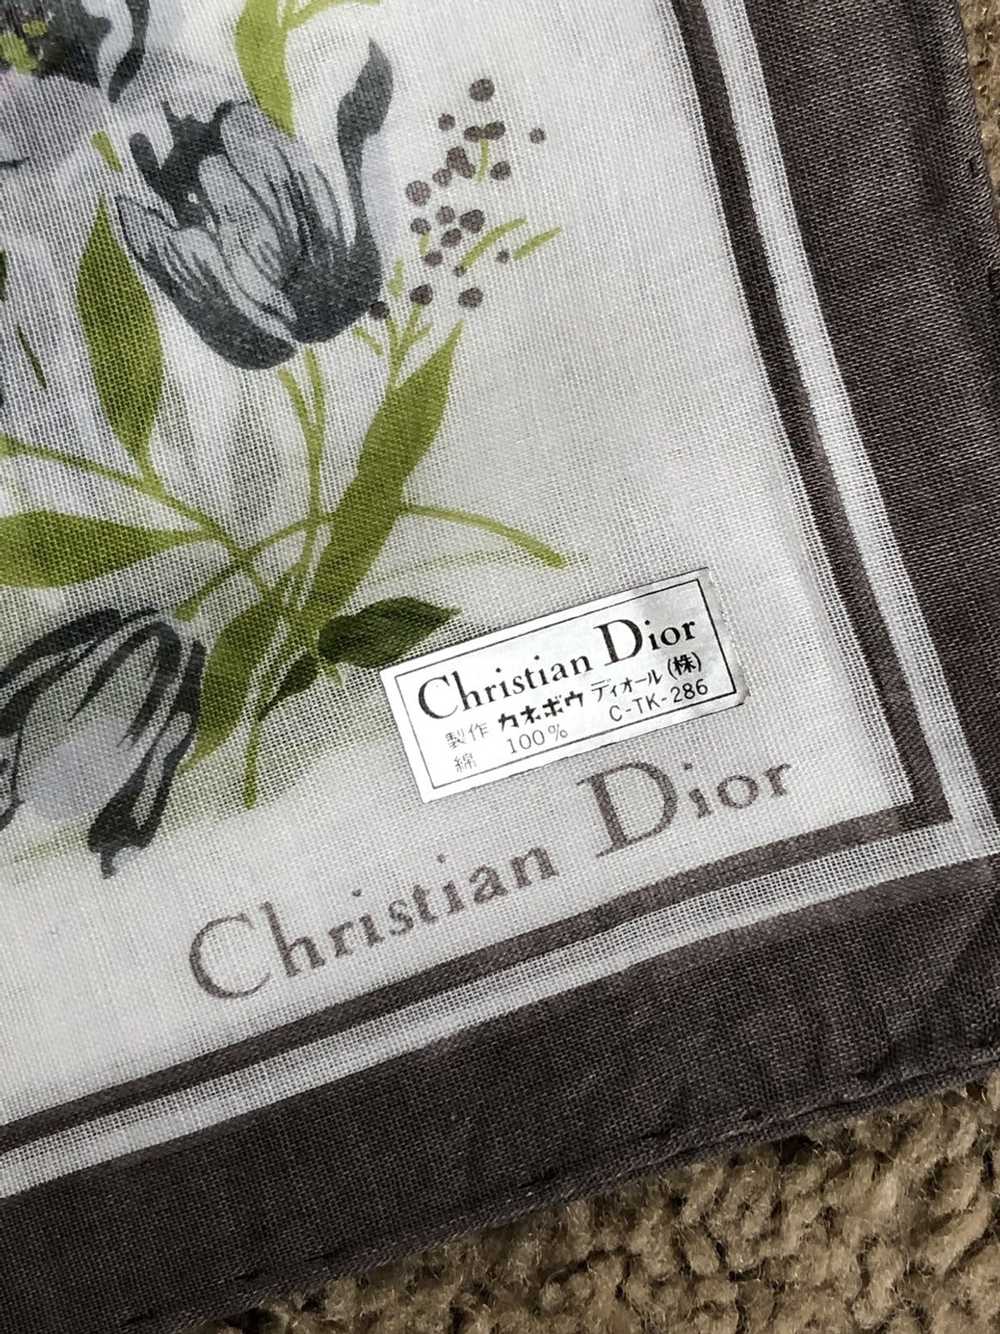 Dior Dior floral scarf / wrap - image 2